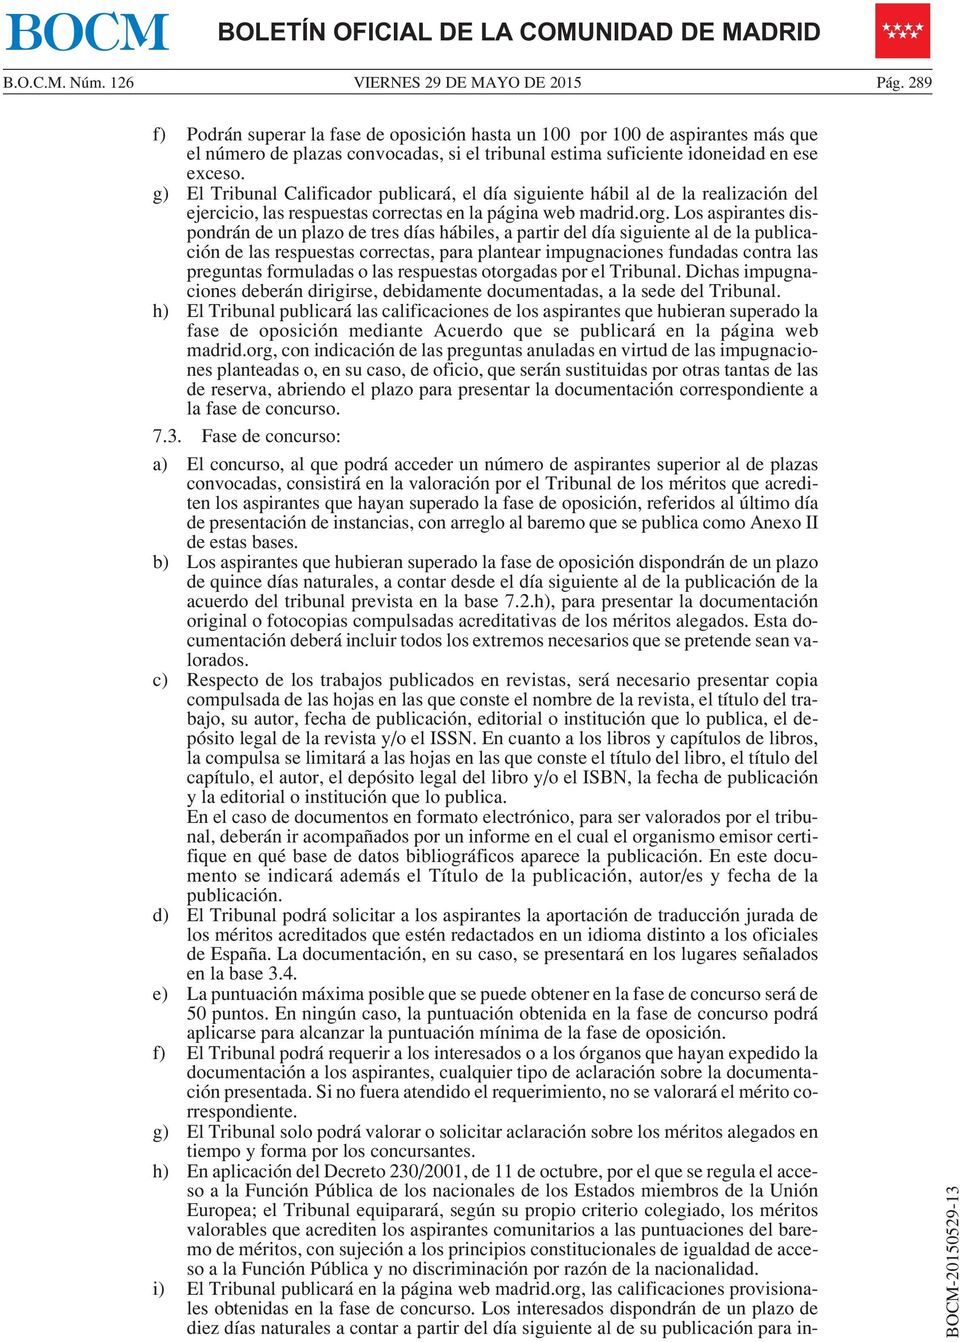 g) El Tribunal Calificador publicará, el día siguiente hábil al de la realización del ejercicio, las respuestas correctas en la página web madrid.org.